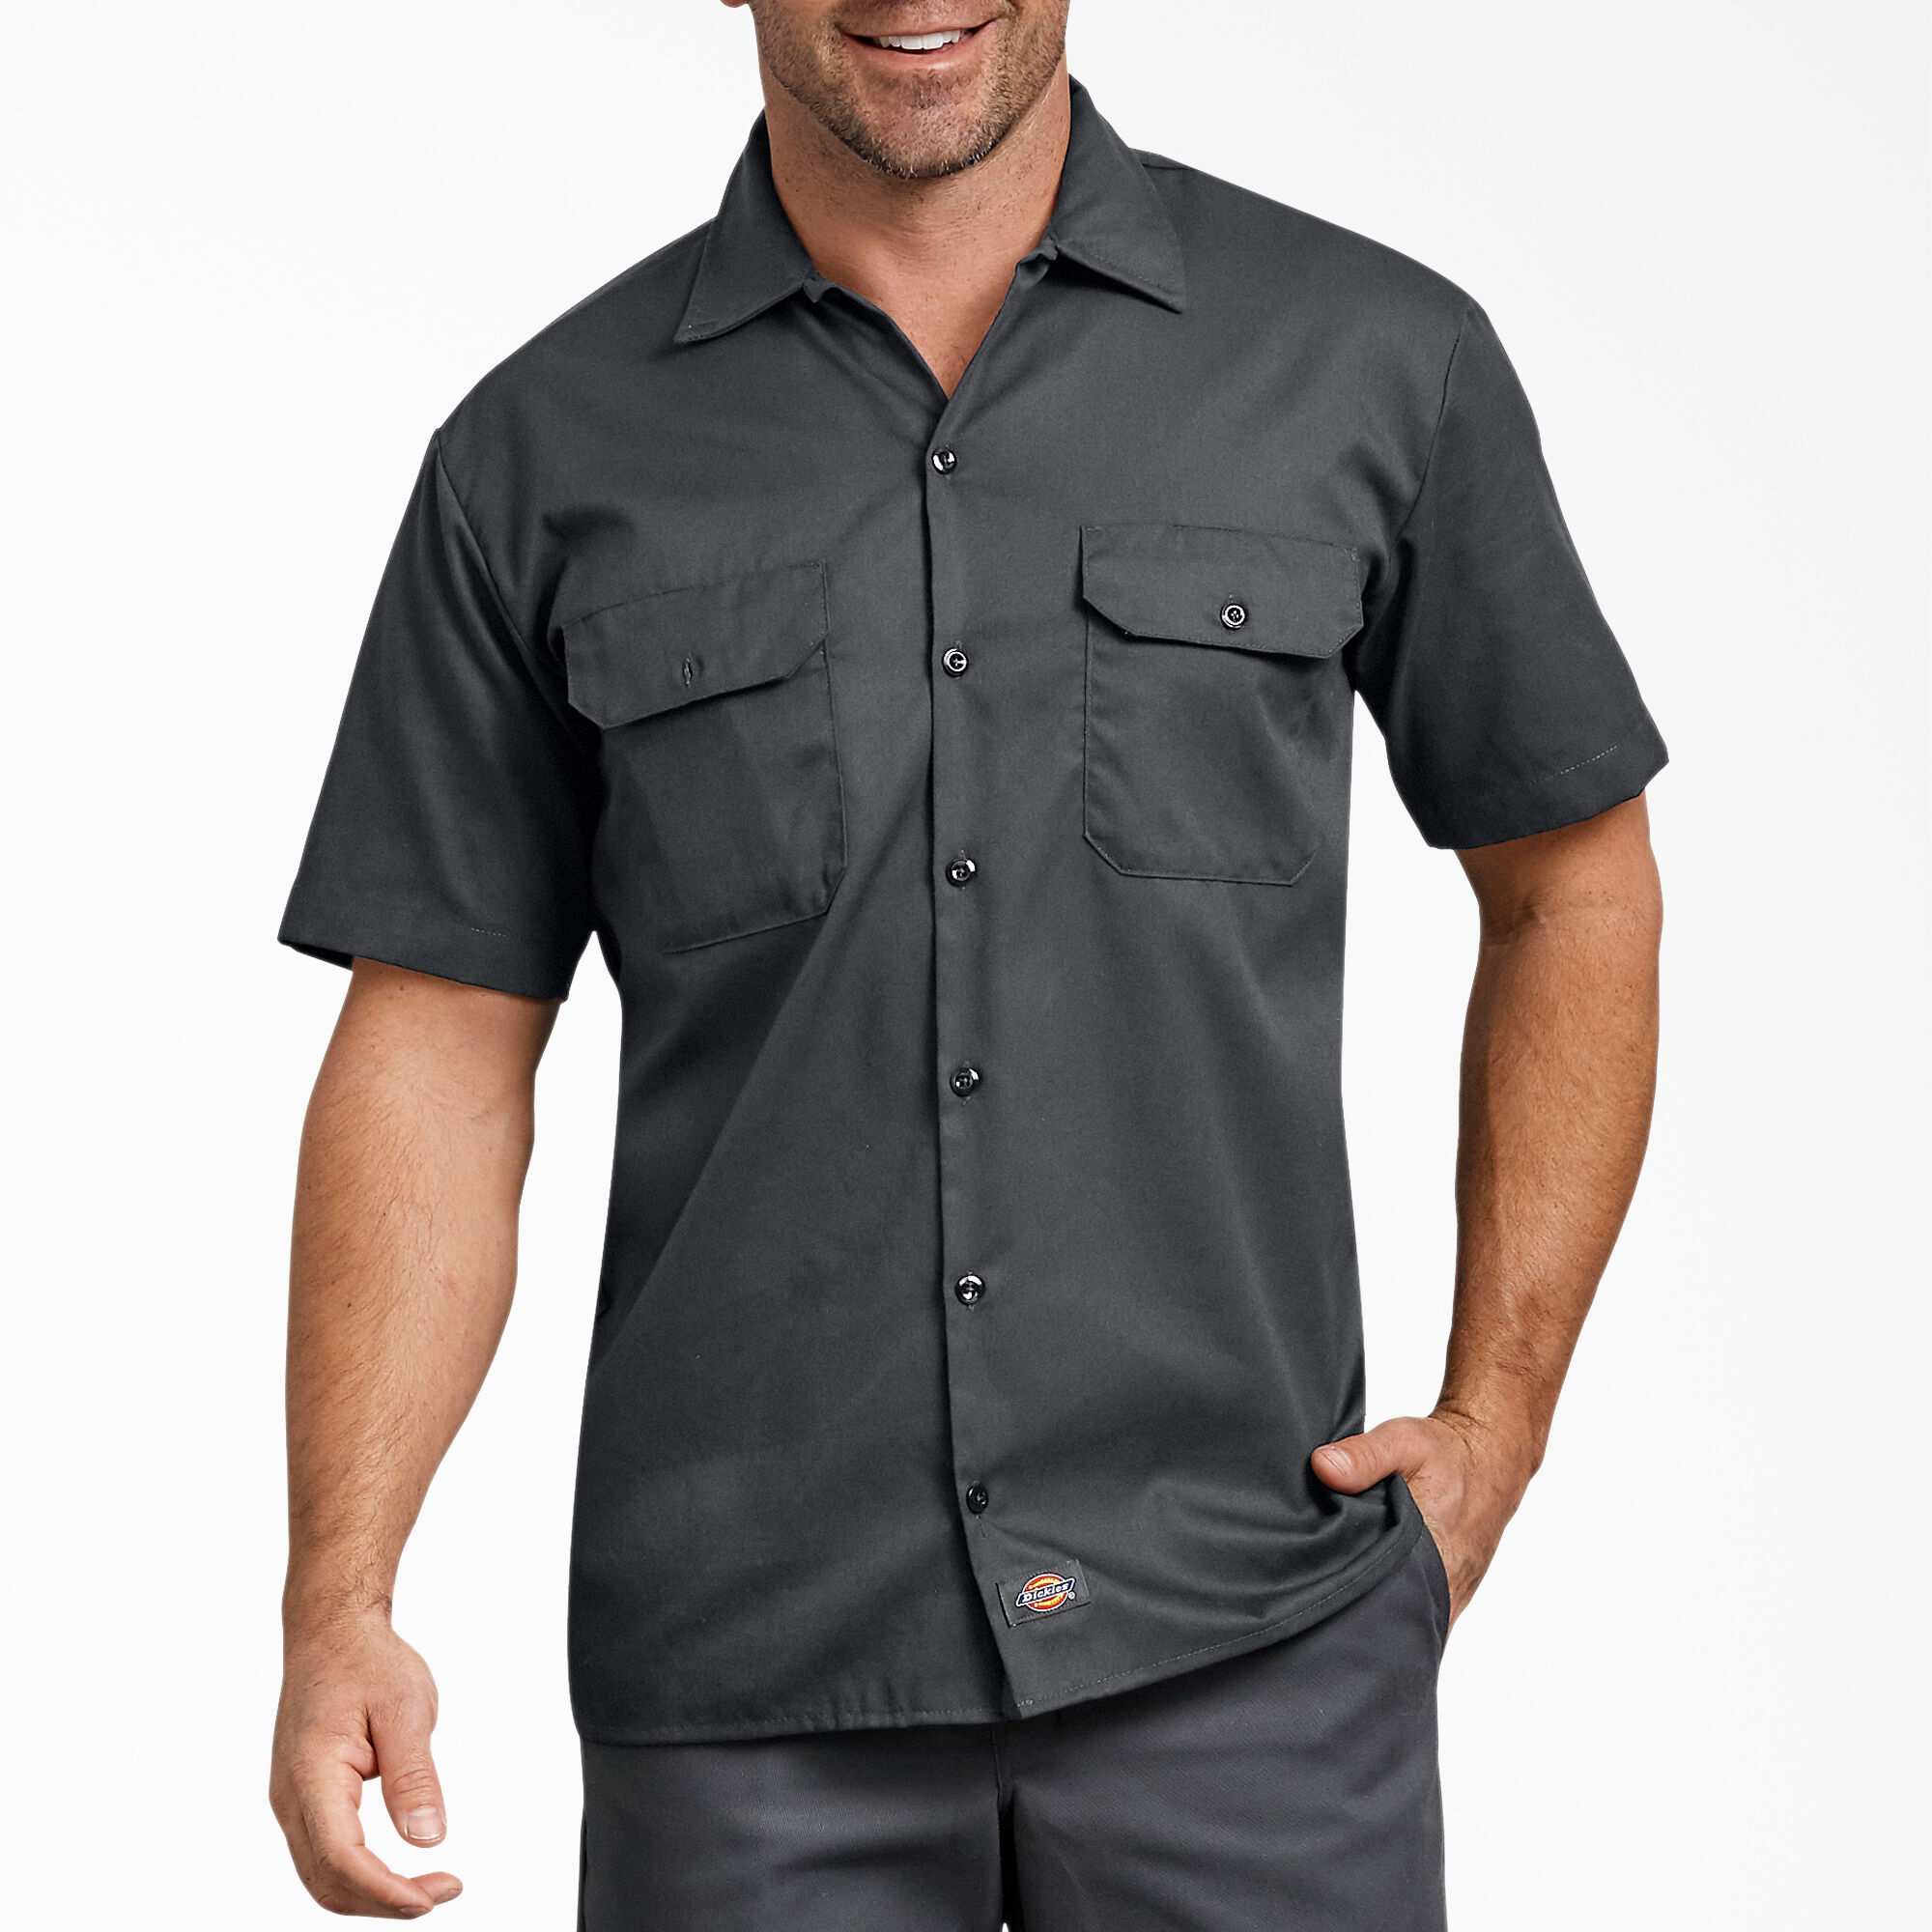 L Dunkles Charcoal Dickies Littmann Workwear ls535ch Herren Short Sleeve Industrie Arbeit Shirt 1 